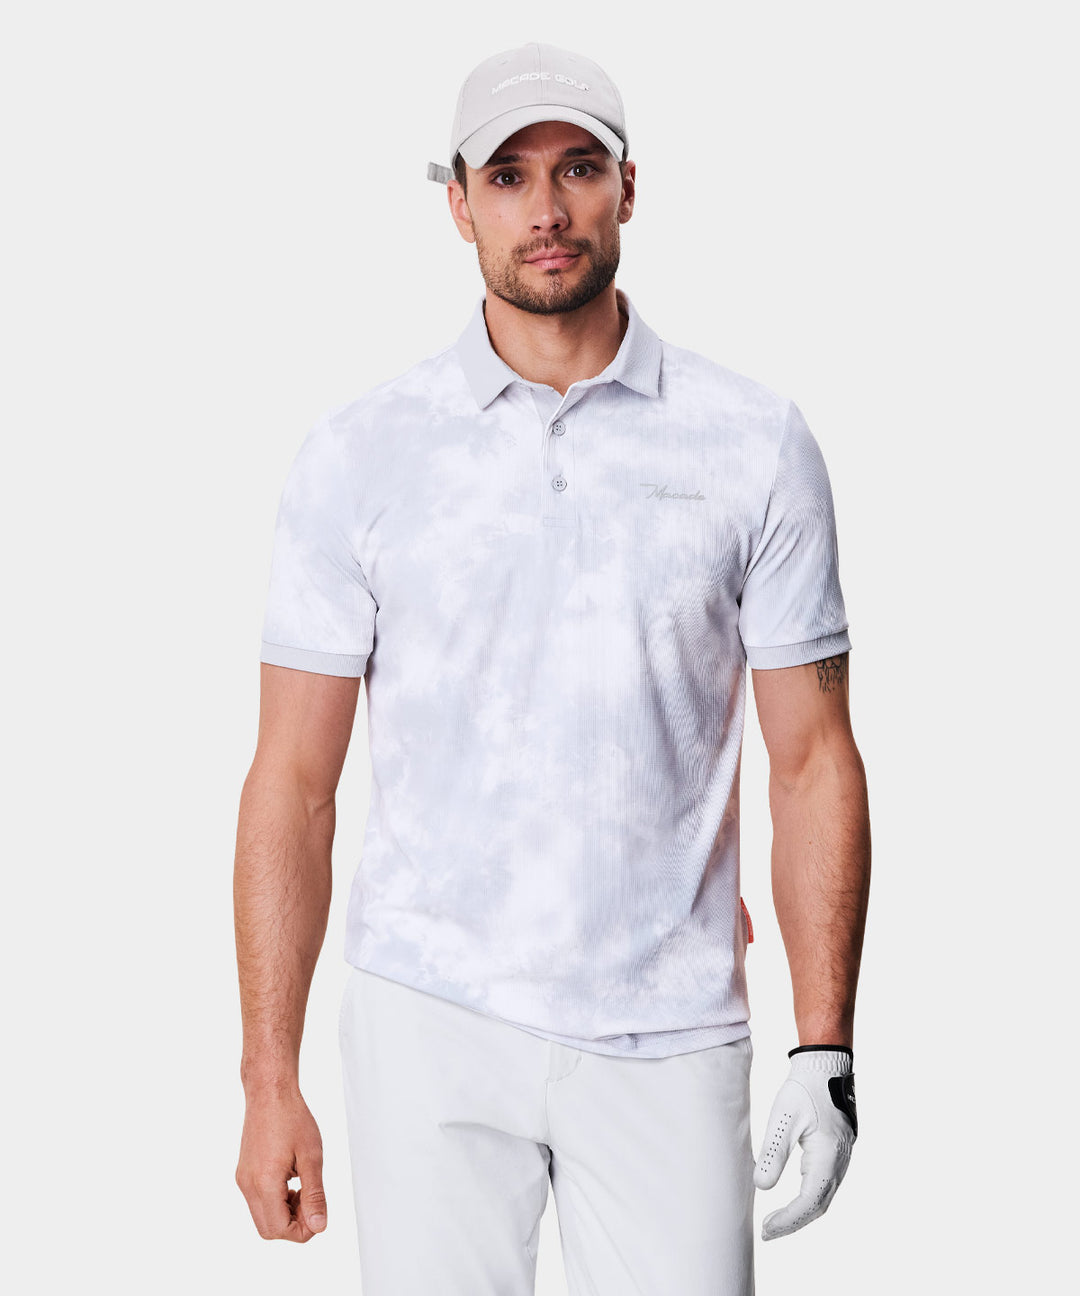 Jeston Tie-Dye Polo Shirt Macade Golf